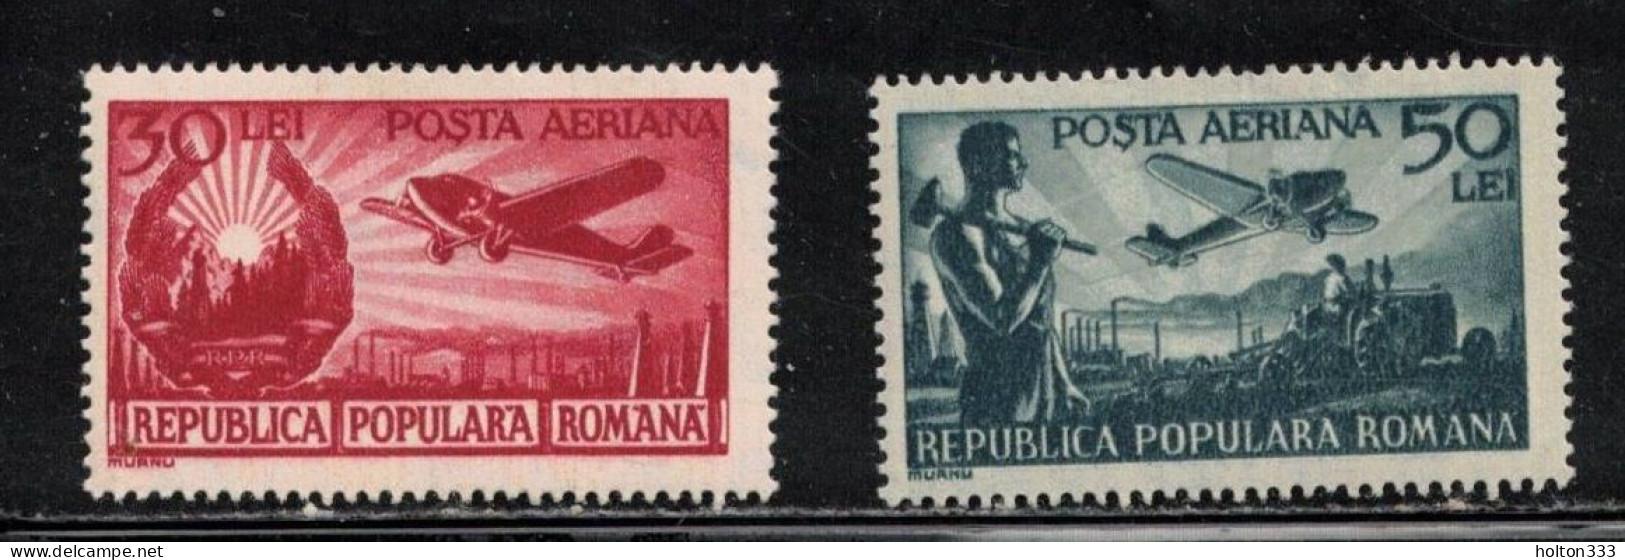 ROMANIA Scott # C32-3 MH - Airmail Issues - Unused Stamps